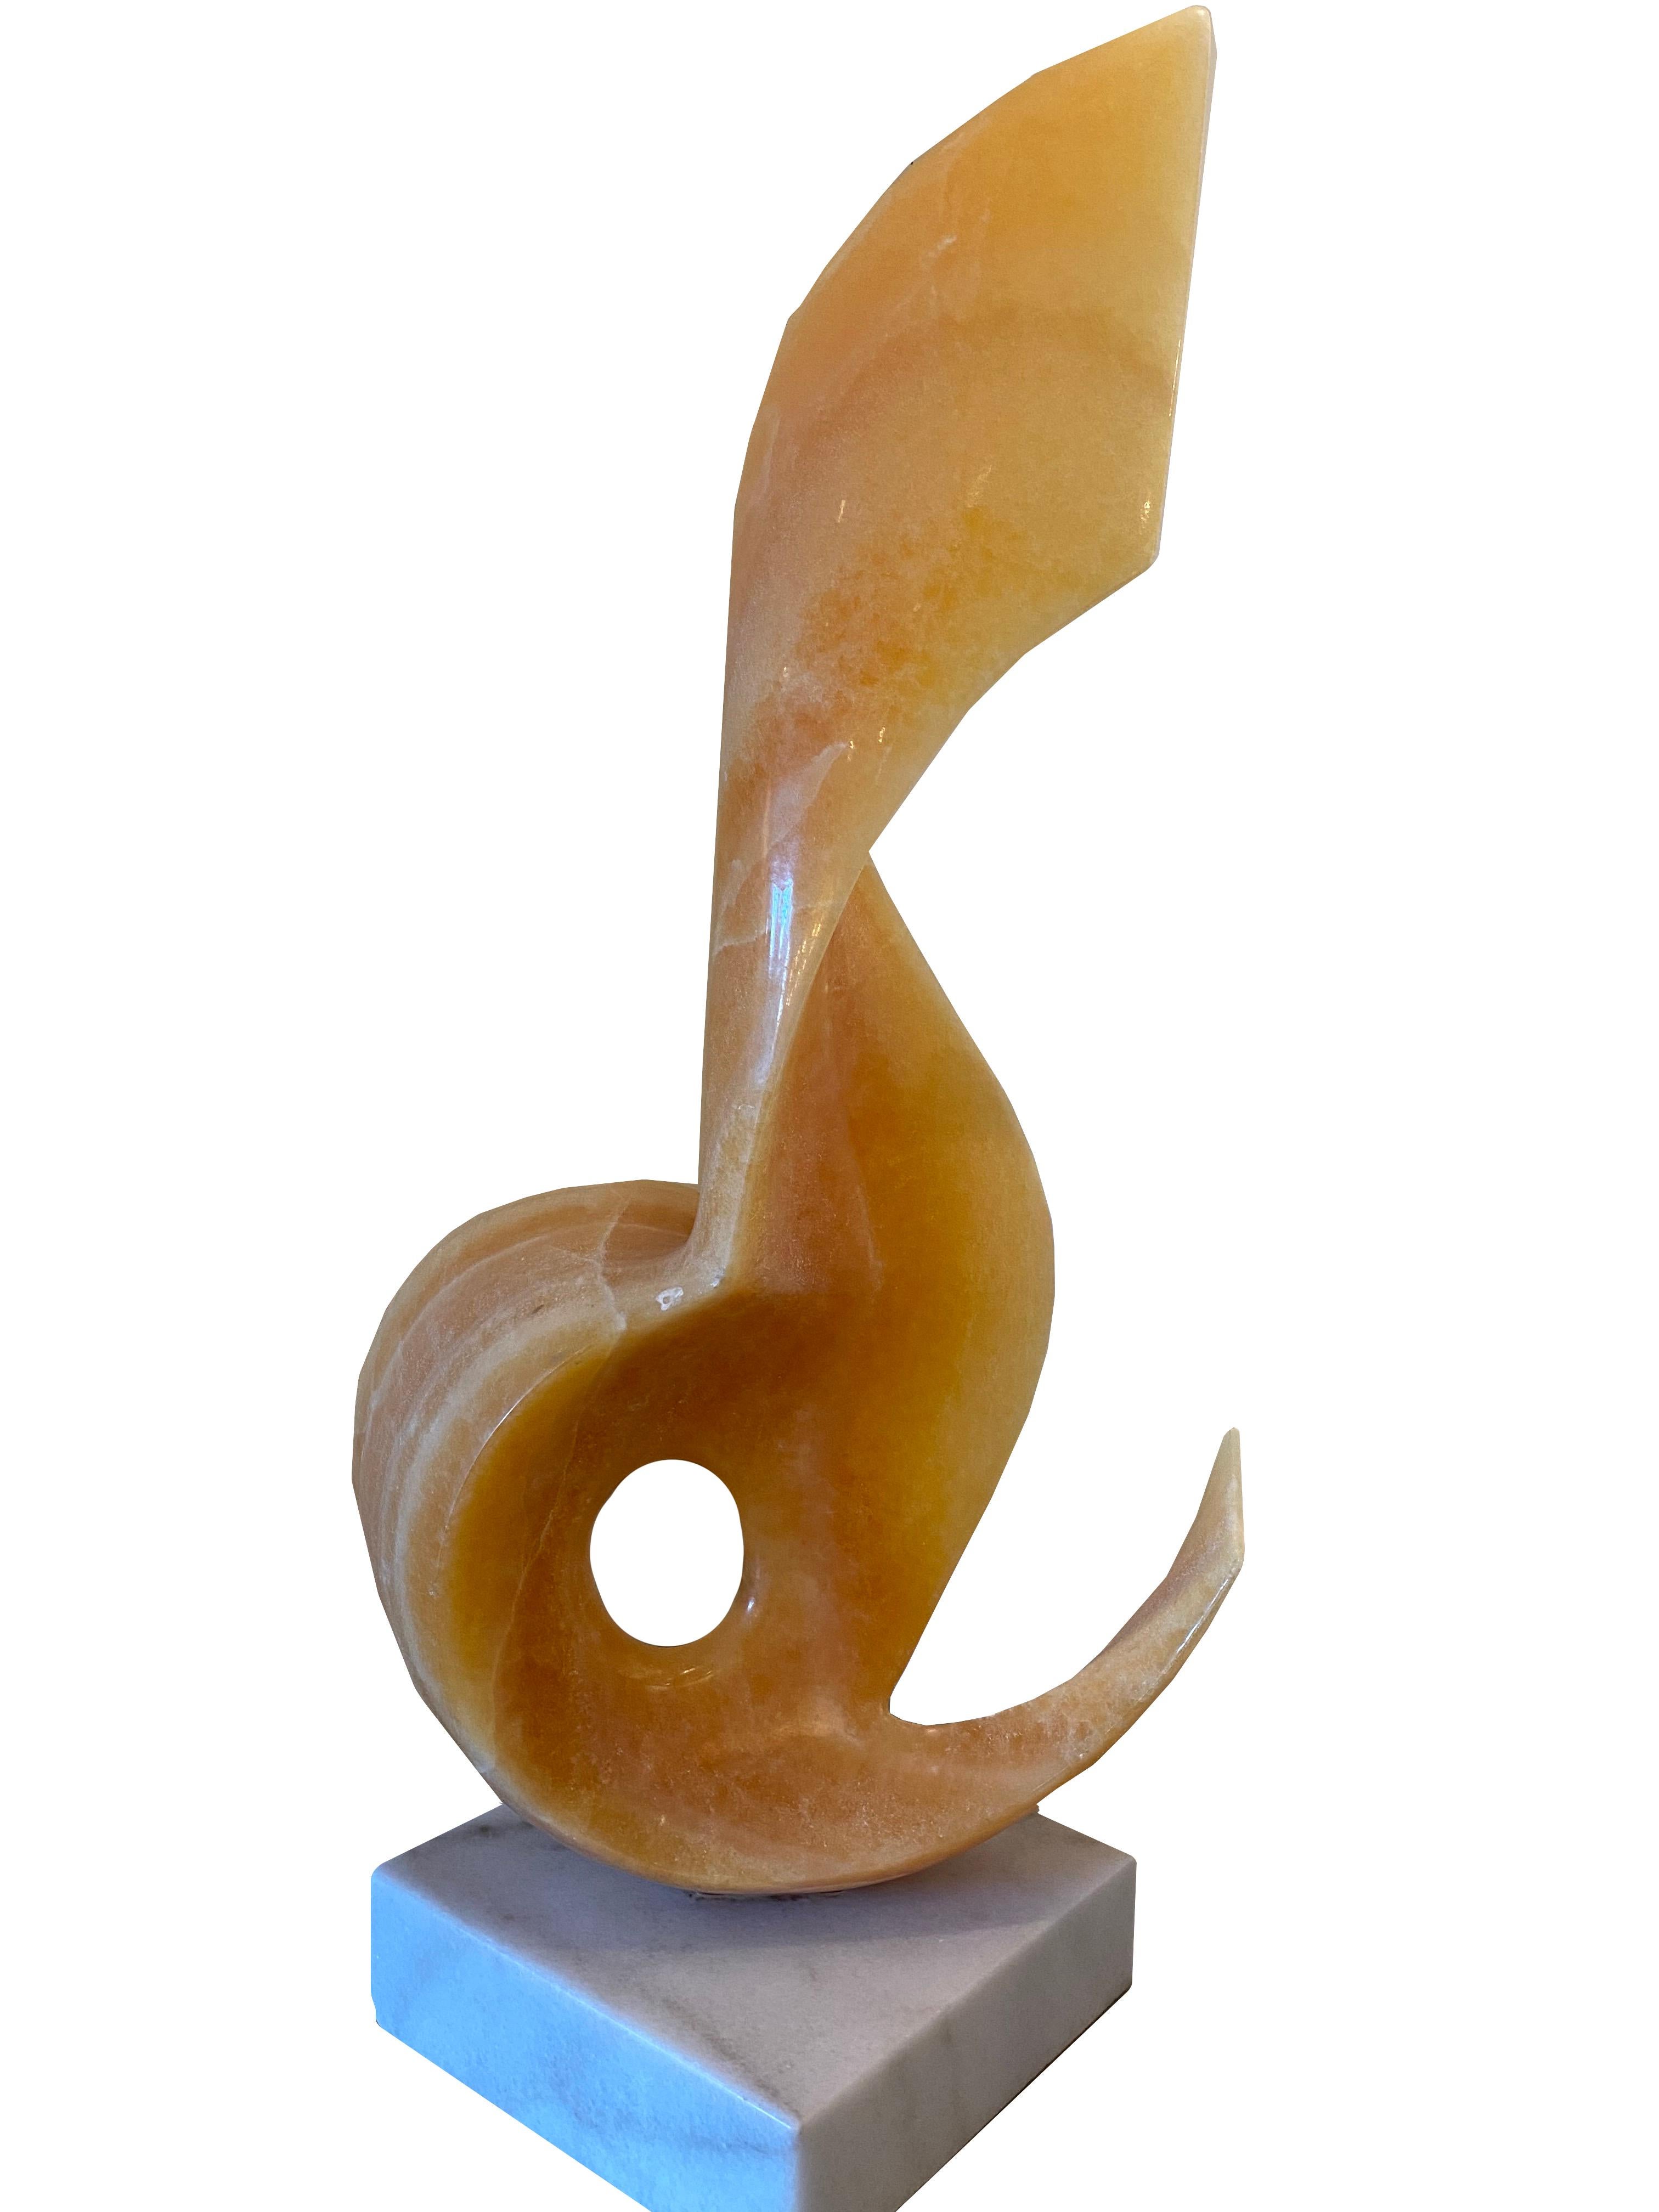 Une sculpture unique en pierre sculptée à la main par l'artiste abstrait mexicain Leonardo Nierman.

La Flama de Leonardo Nierman, mexicain (1932)
Sculpture en onyx
Taille : 32 x 9.5 x 9.5 in. (81.28 x 24.13 x 24.13 cm)